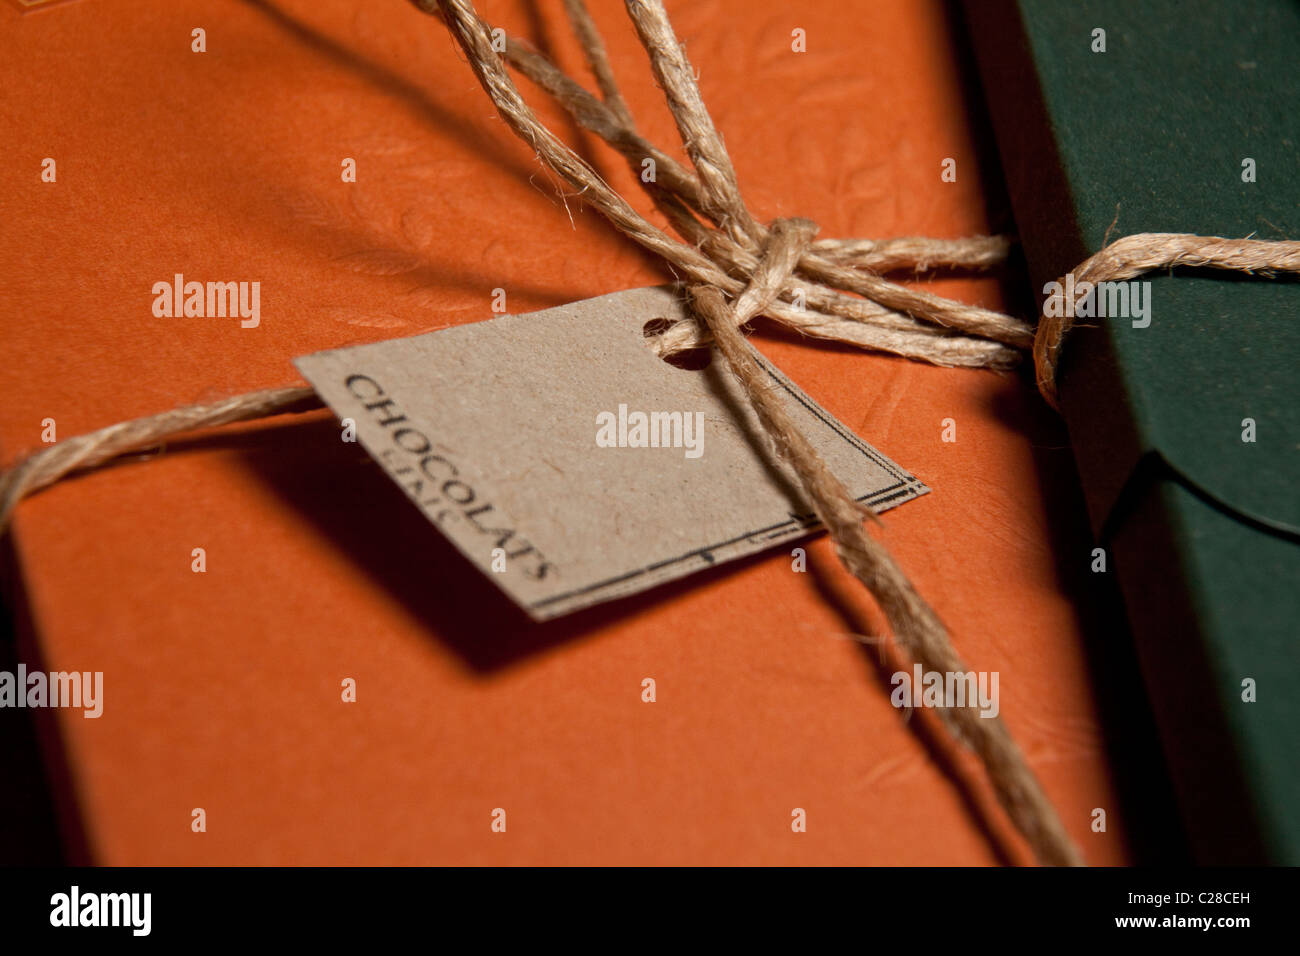 Schokolade-Label und Geschenk Warpped mit leeren Etiketten und Kakao auf auf braunen Karton. Stockfoto